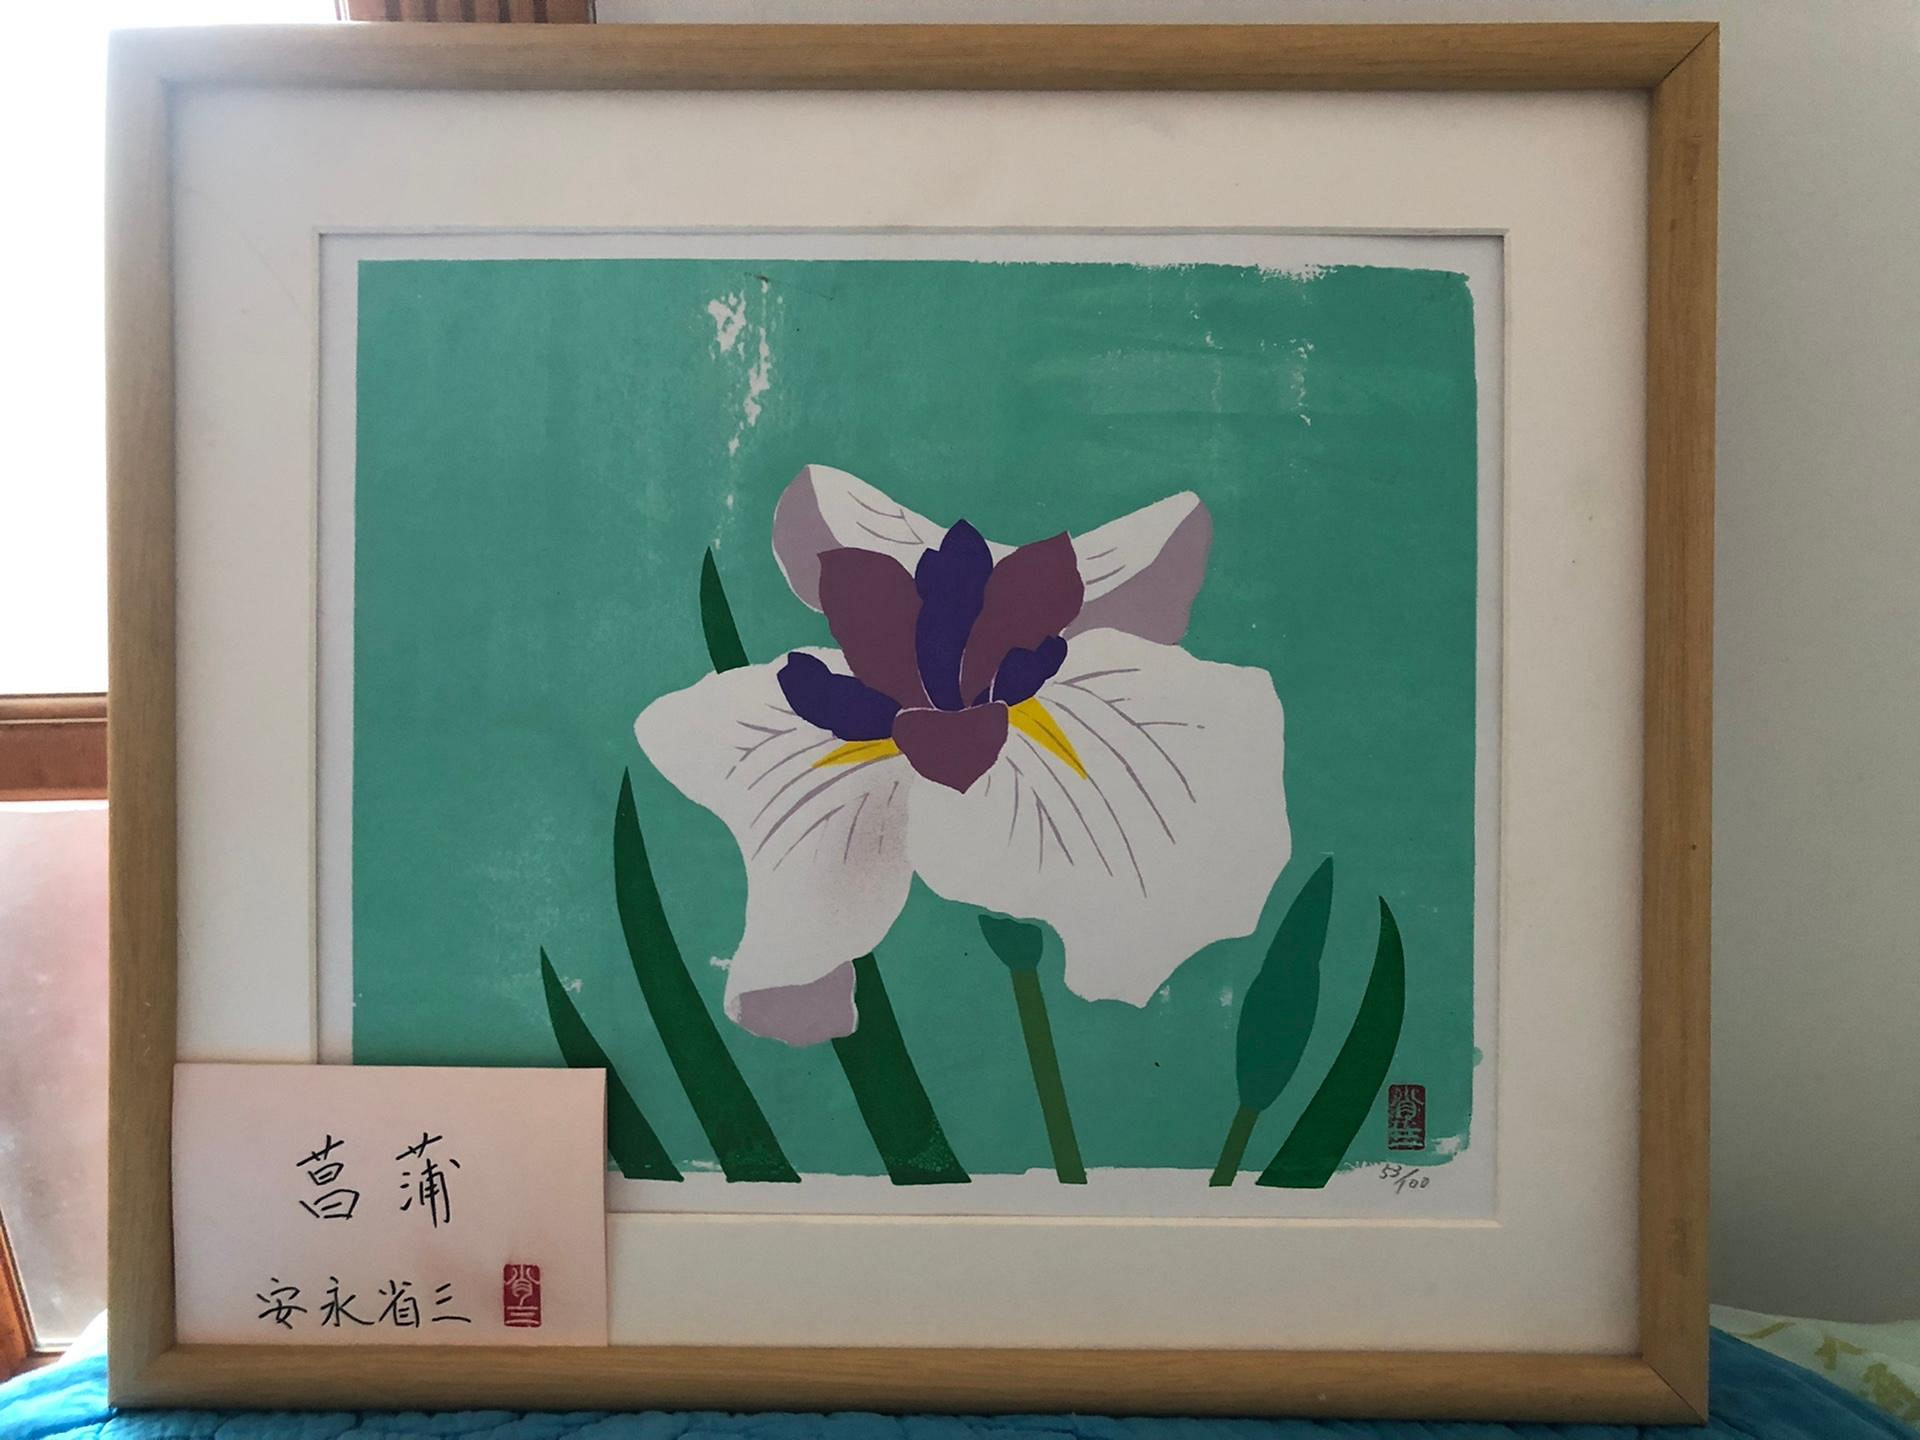 日本回流 安永省三 手繪菖蒲 畫風細膩 色彩明快 細節如圖